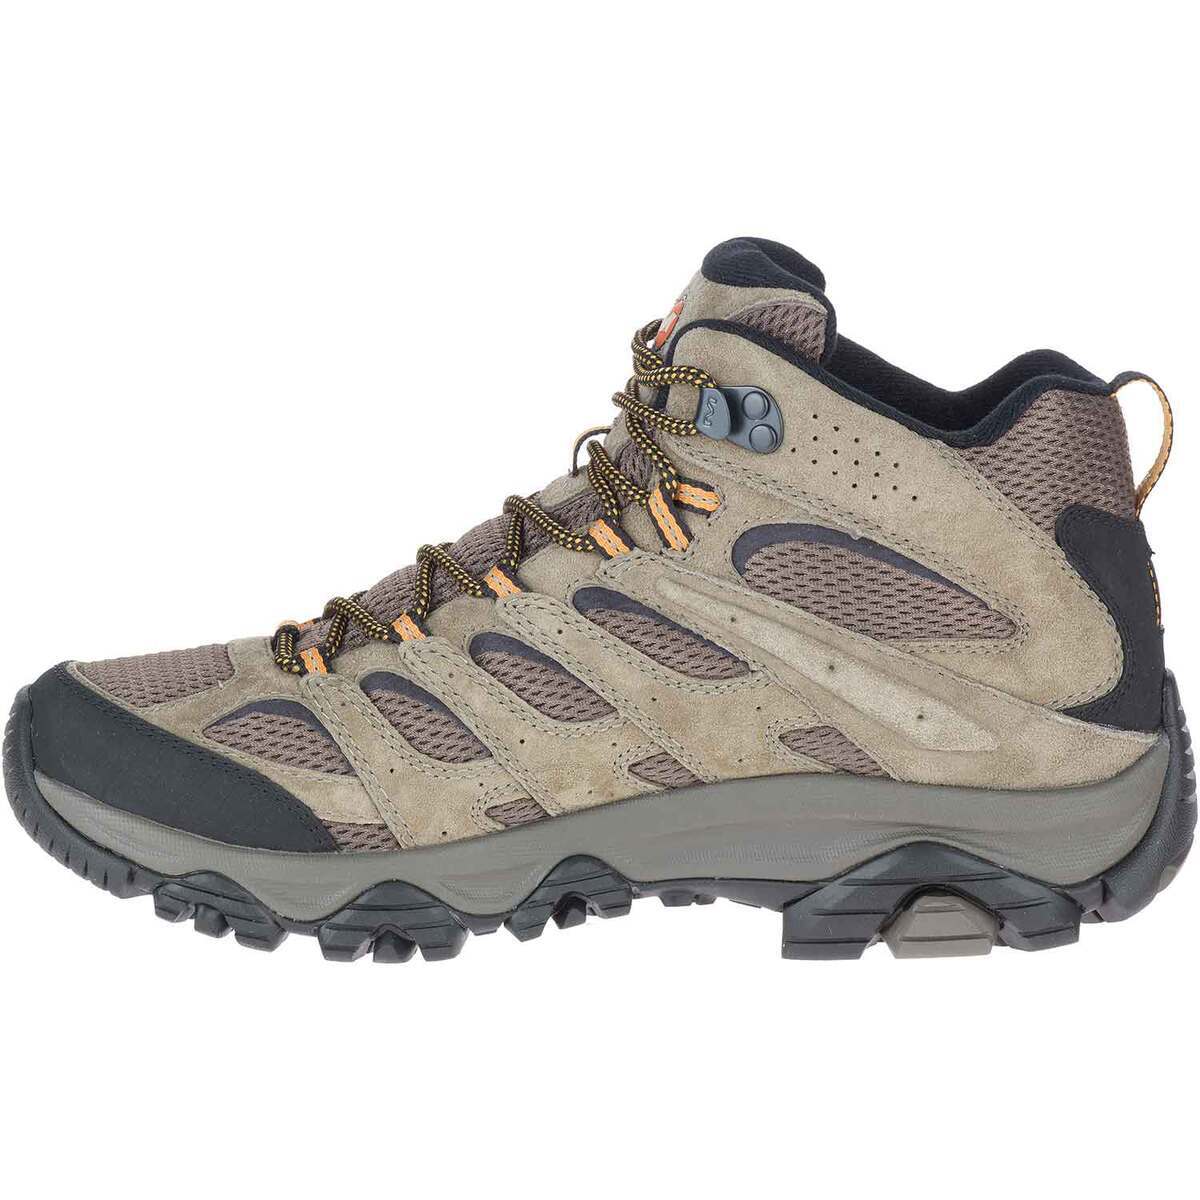 Merrell Men's Moab 3 Mid Hiking Boots - Walnut - Size 10 - Walnut 10 ...